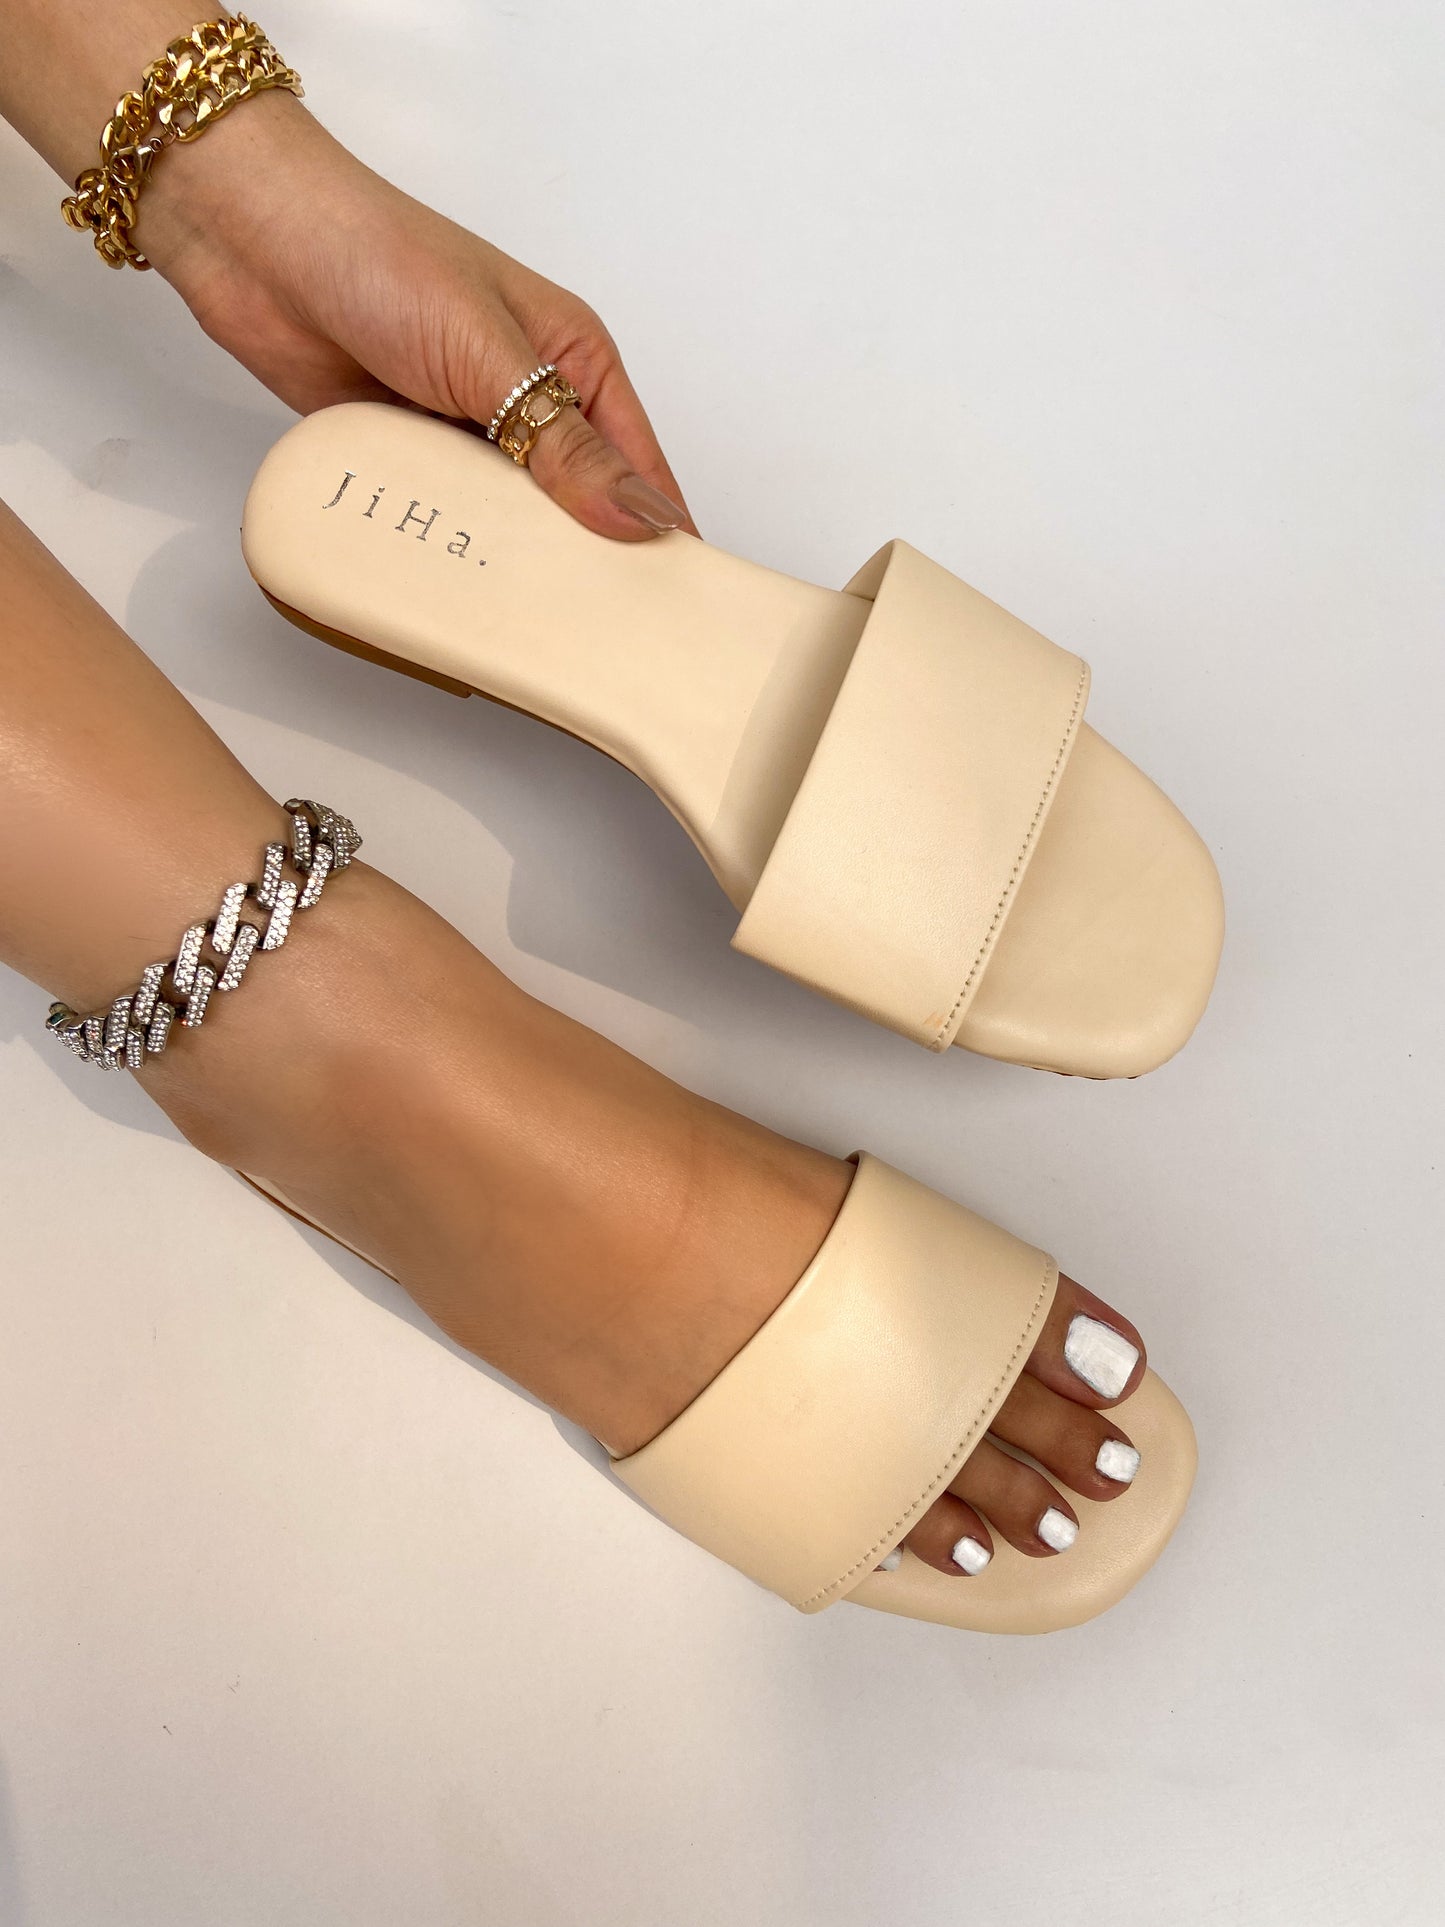 Off White Strap Basic Flats Sandals